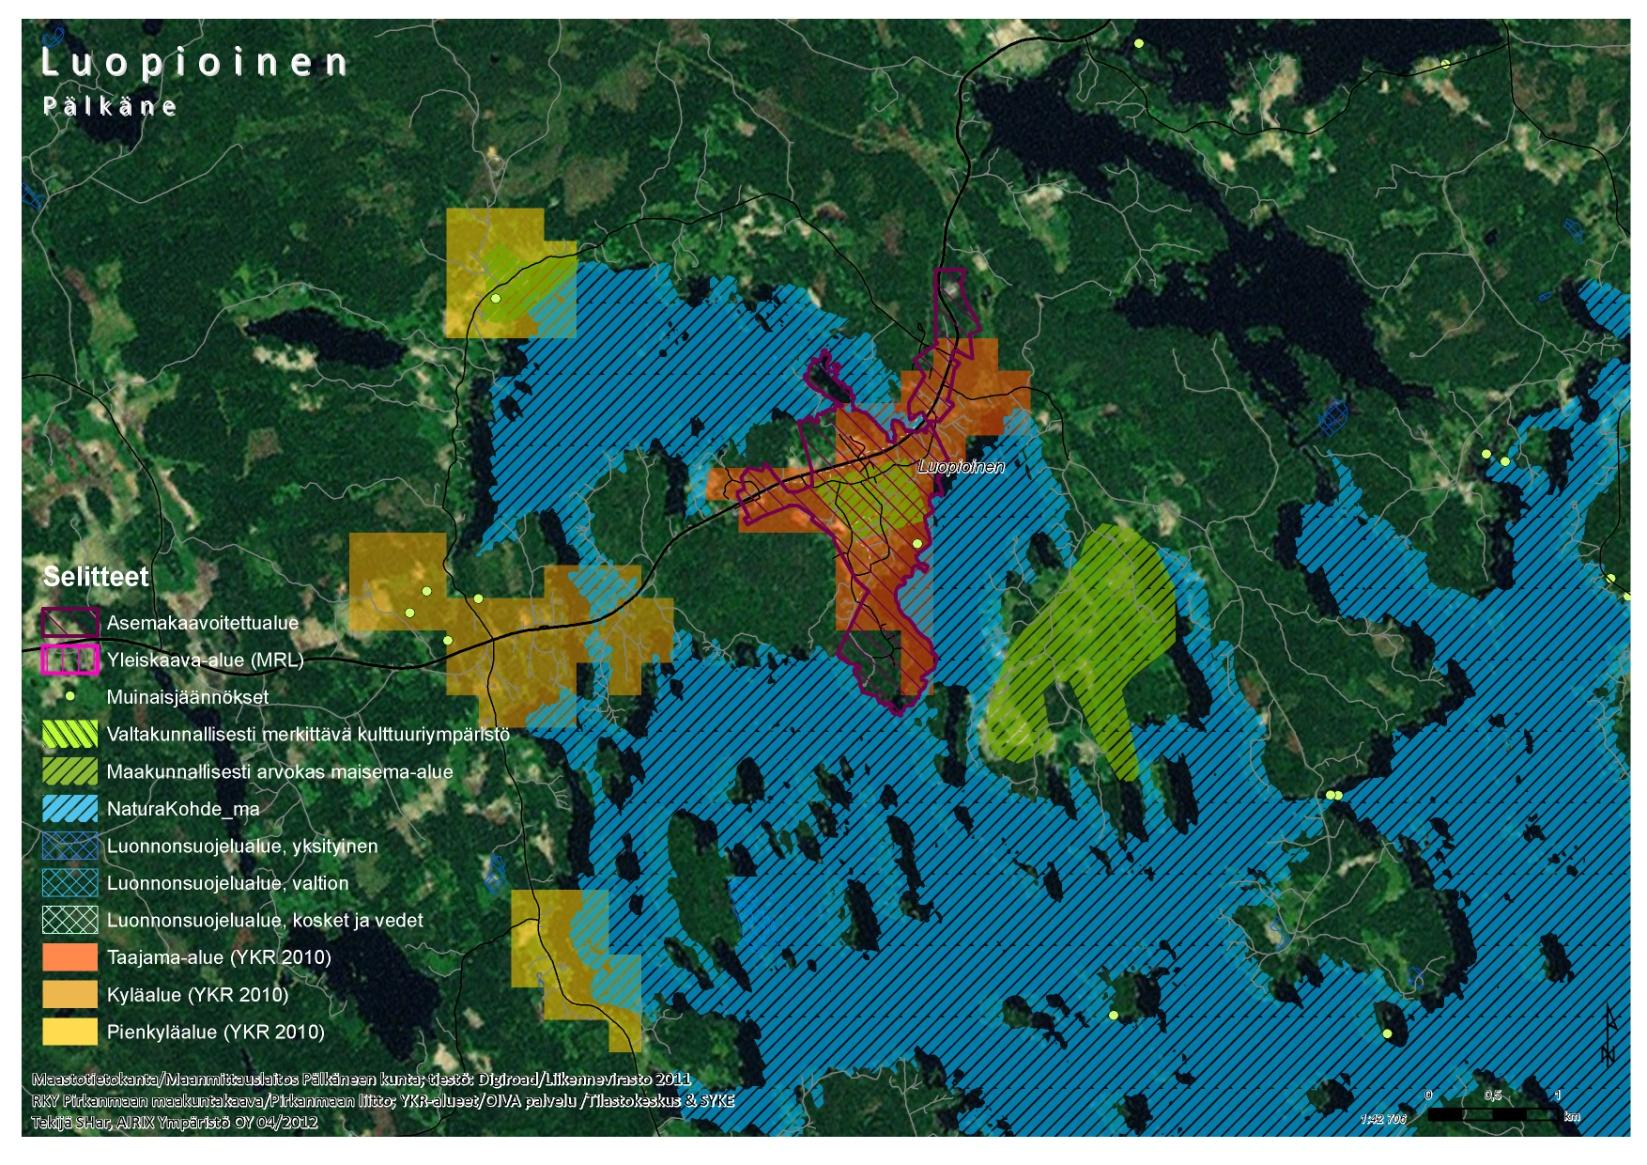 LUOPIOINEN Asukkaita noin 740 2 km säteellä Taajama-asumisen alue (YKR) Asemakaavoitettu Keskustatoimintojen alue